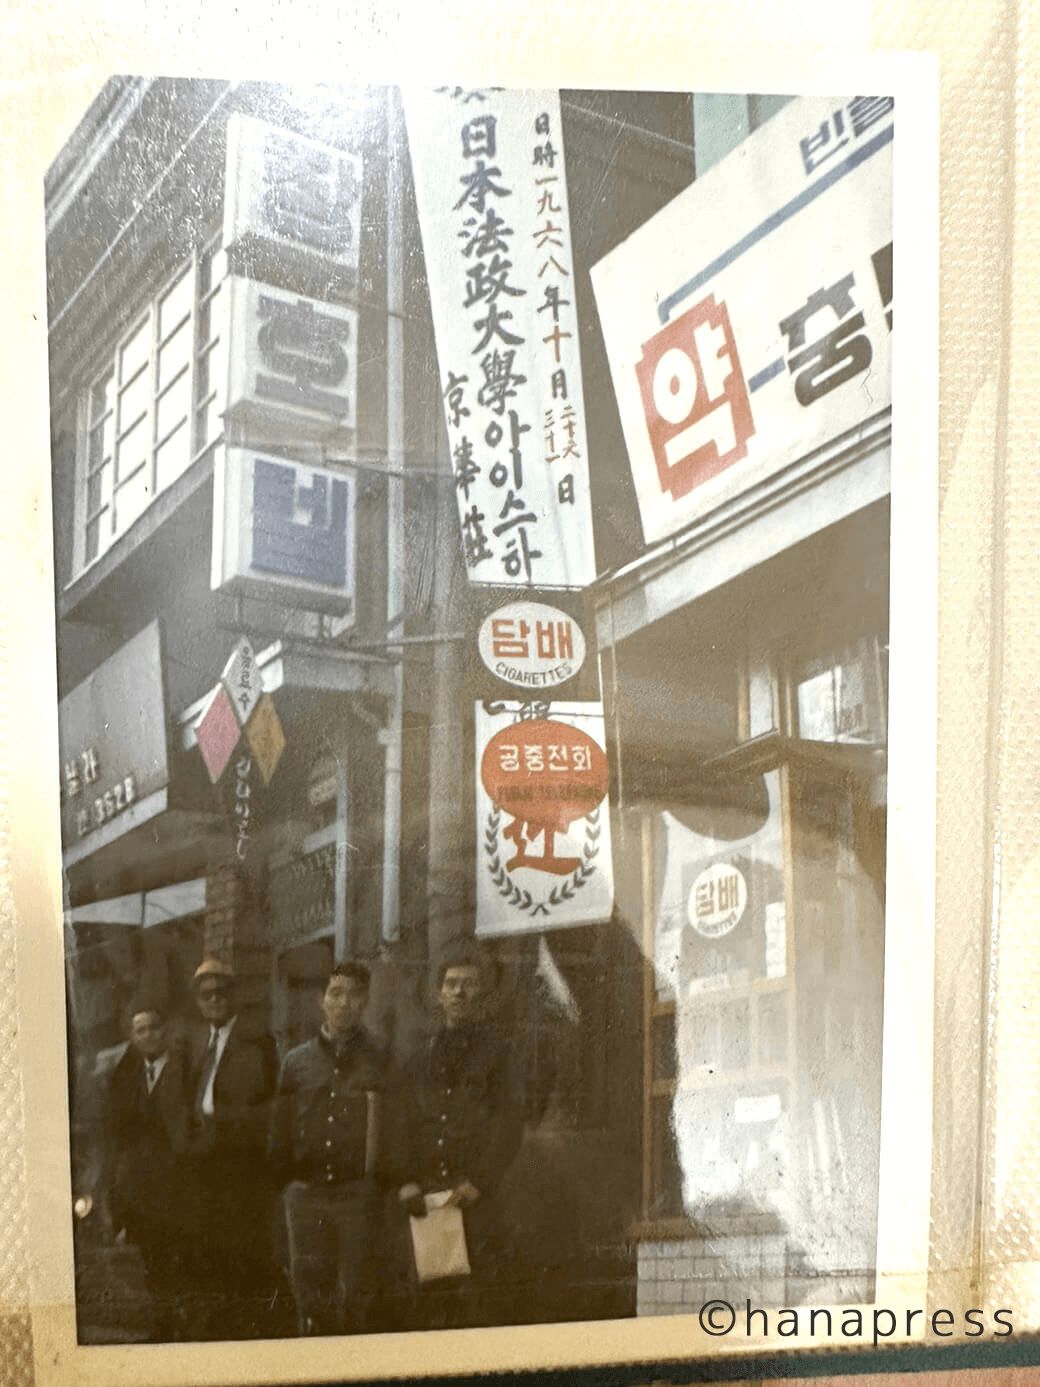 法政大学アイスホッケー部韓国遠征時の街中に掲げられた垂れ幕(1968年)